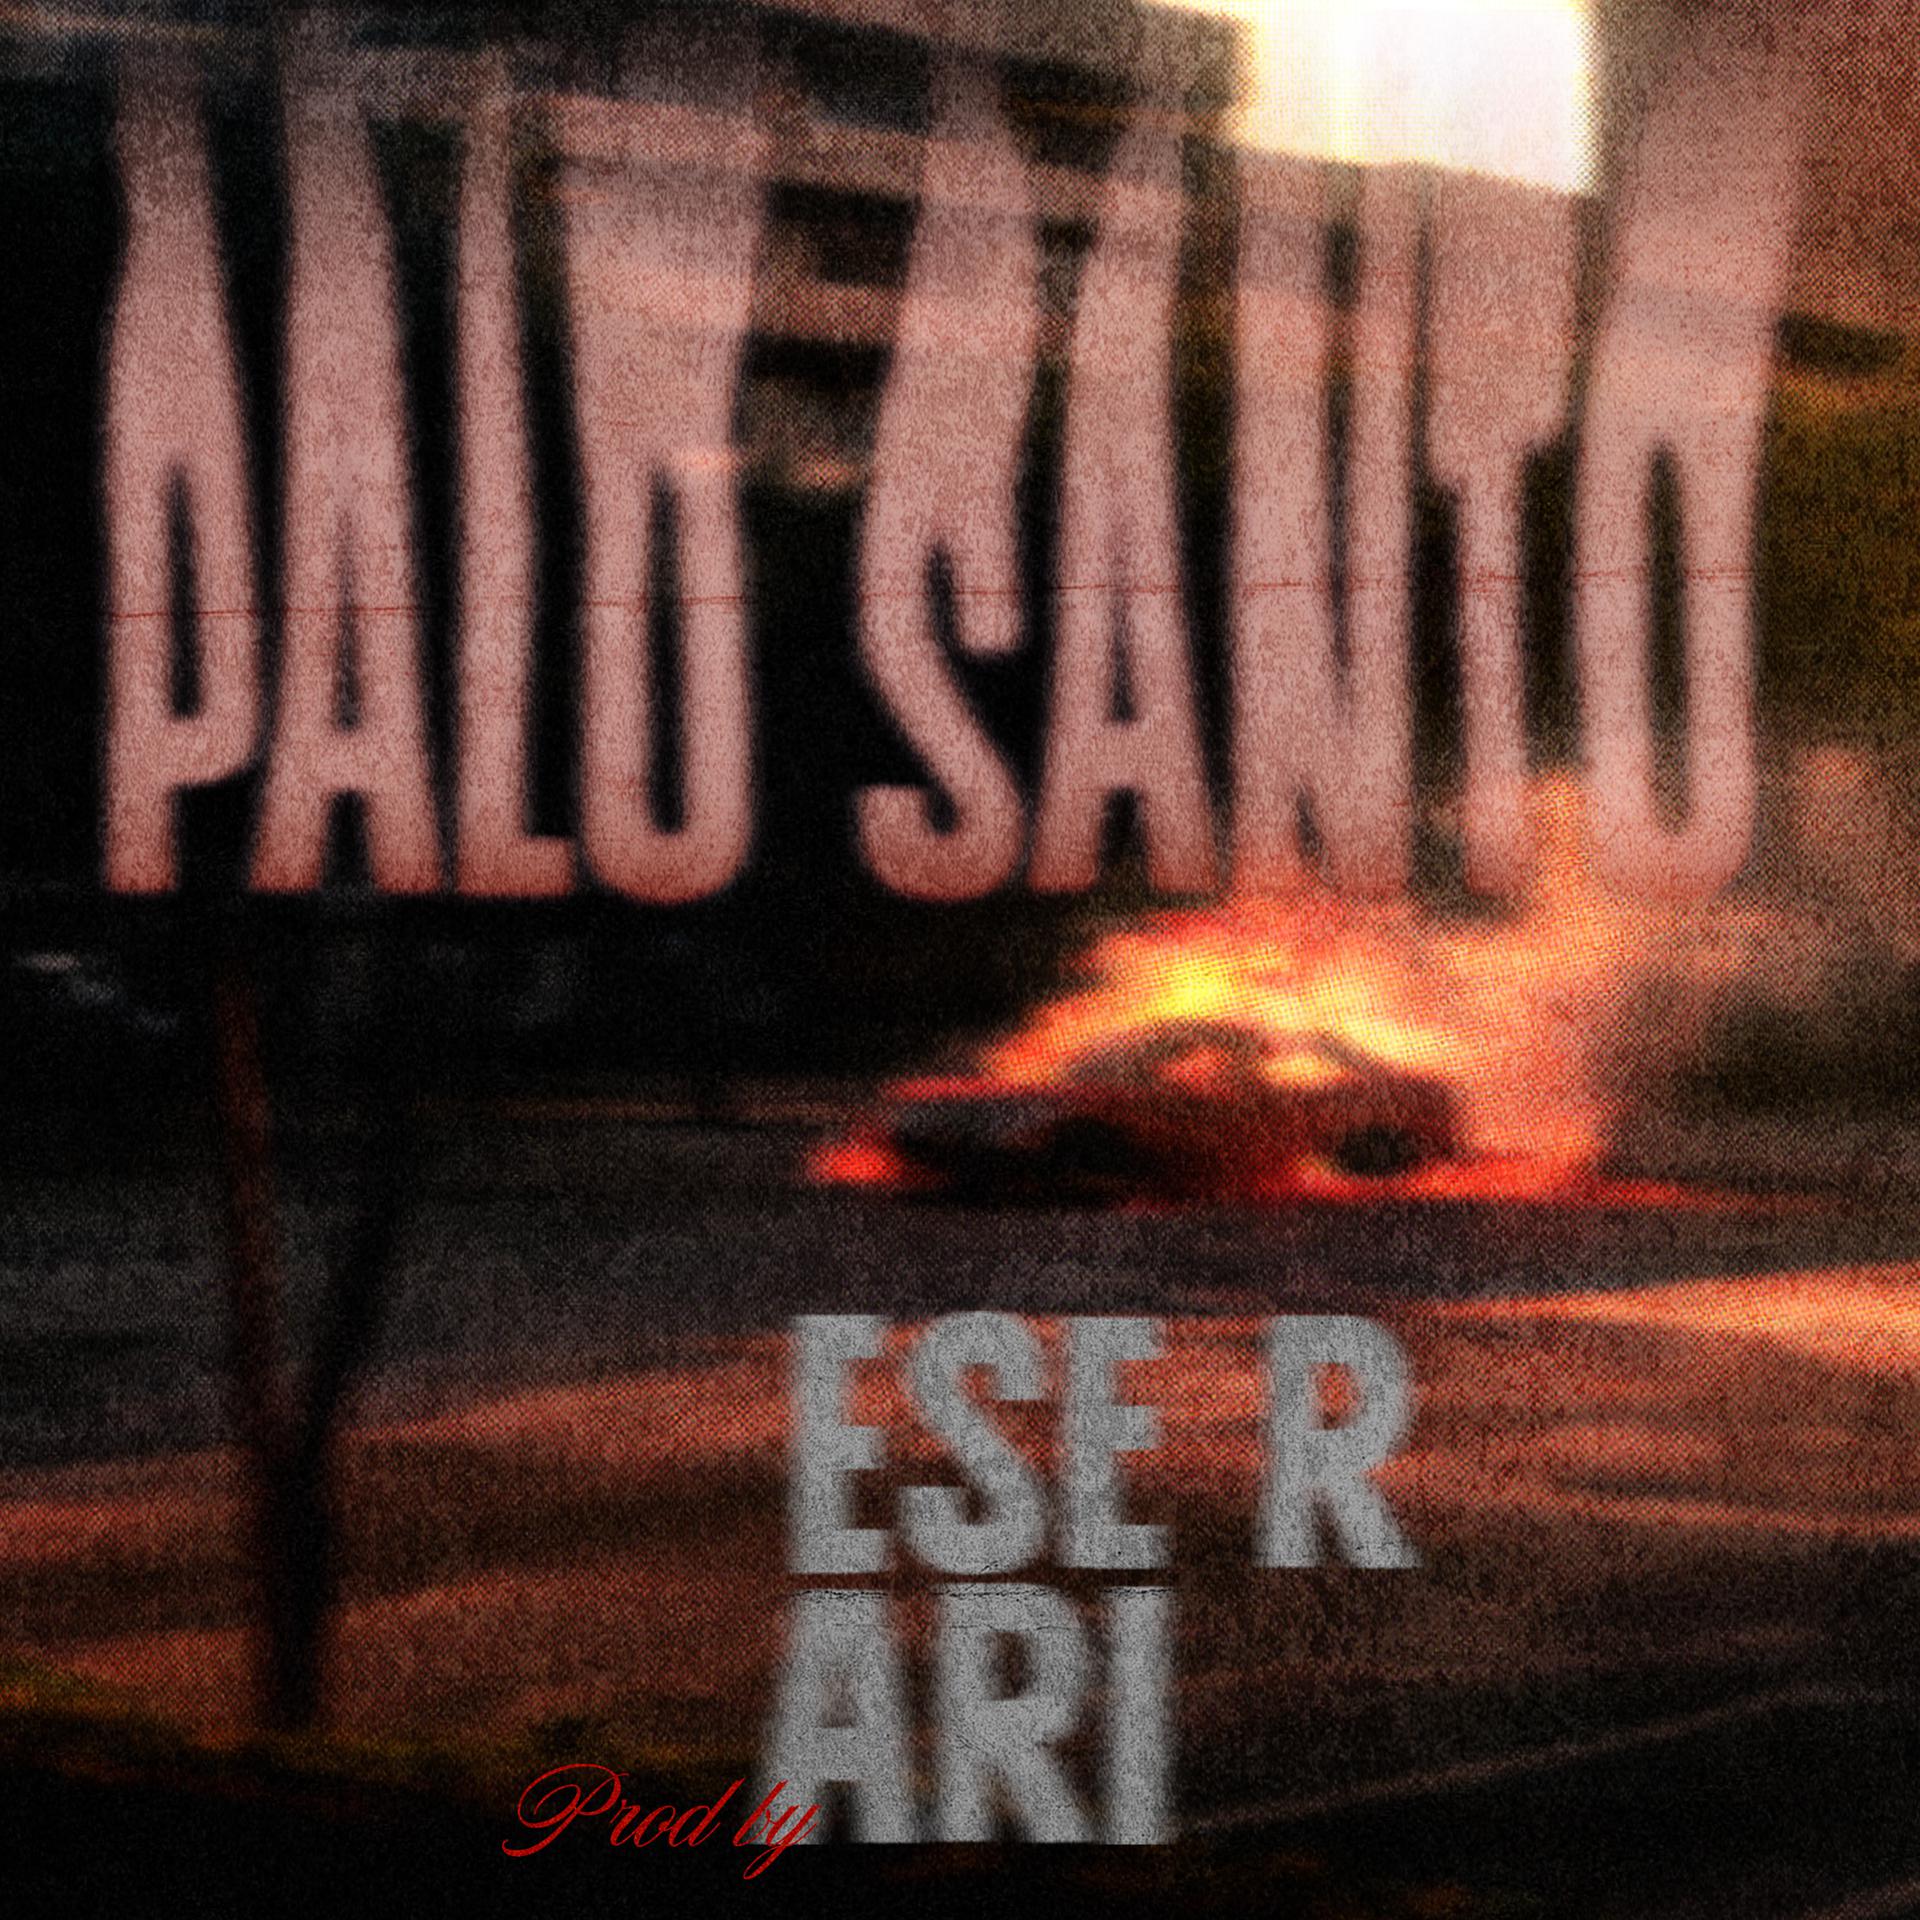 Постер альбома Palo Santo